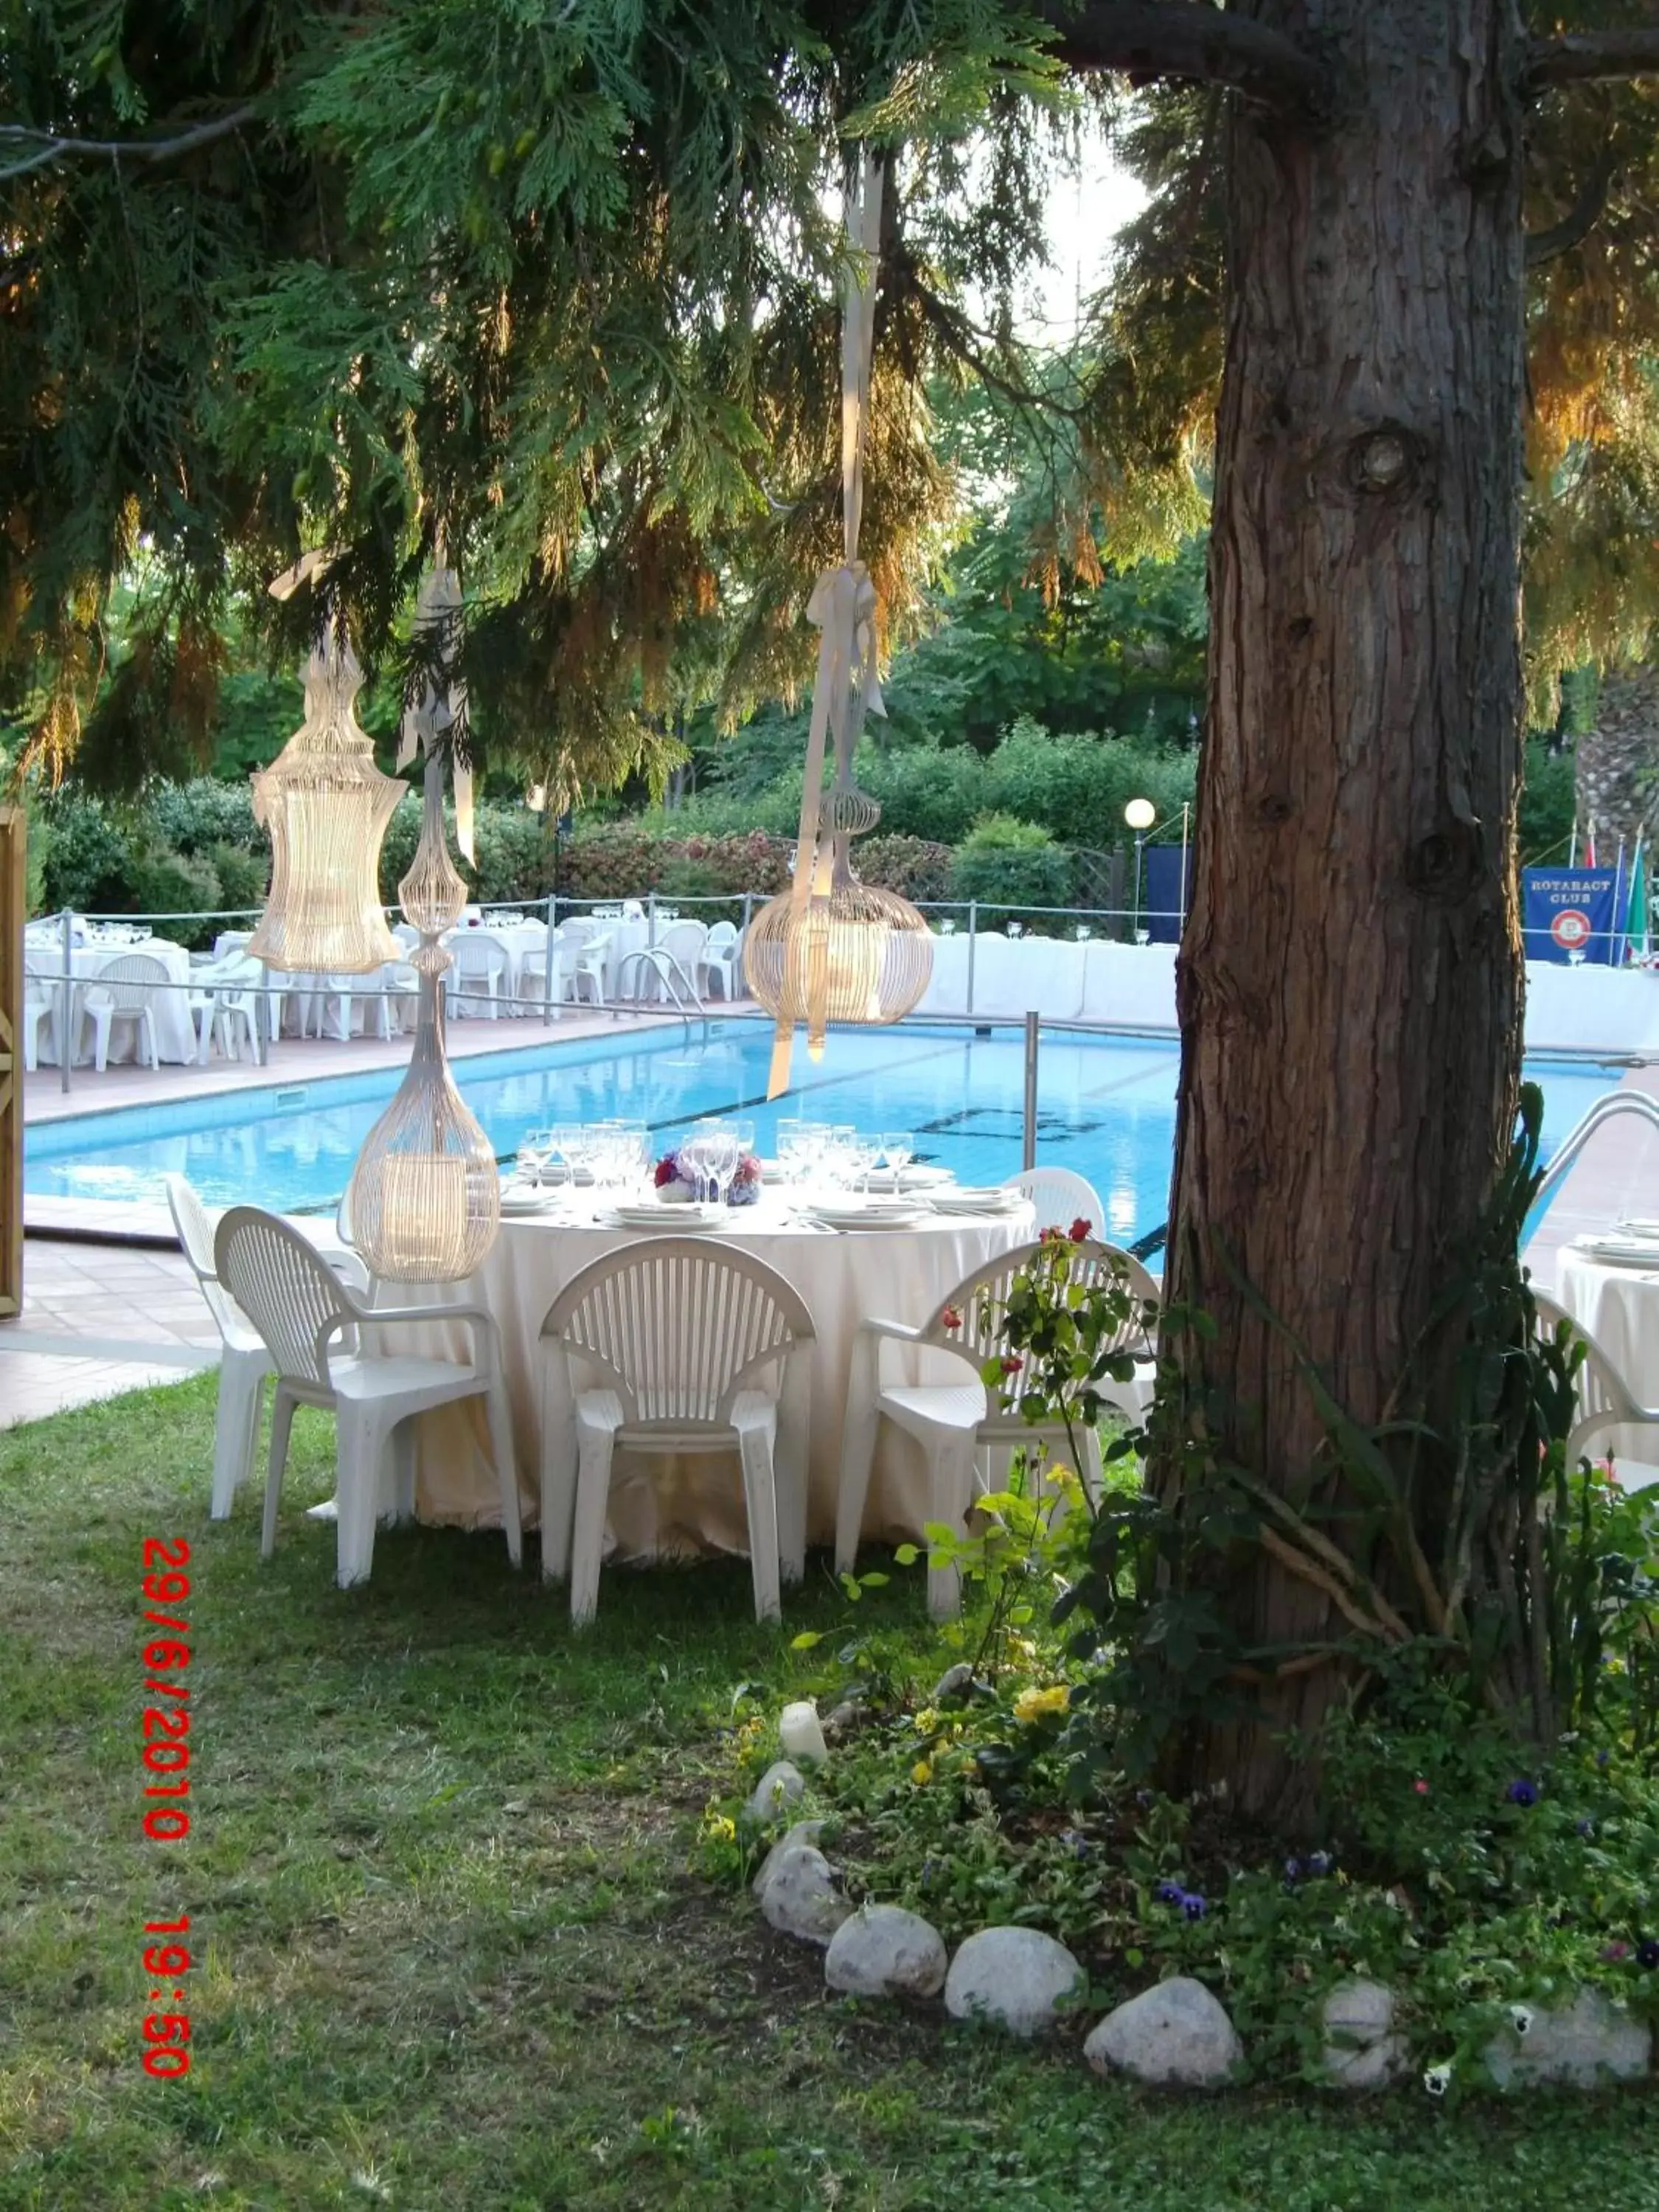 Swimming Pool in Hotel Garden Terni